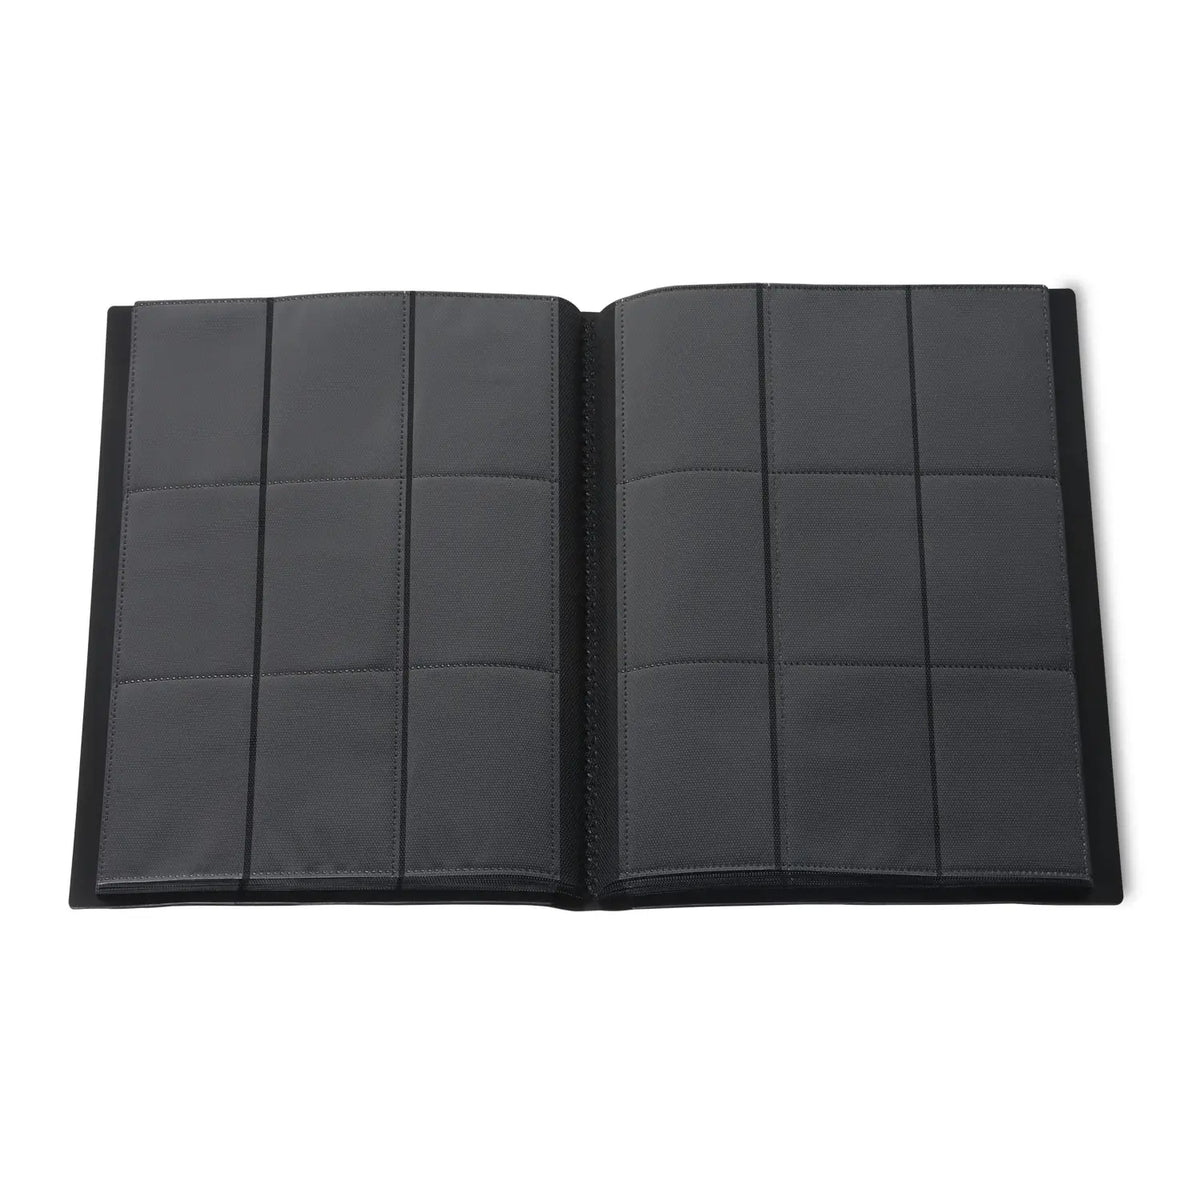 Level Up 9 Pocket Side Loading Card Binder | 360 cards | Black